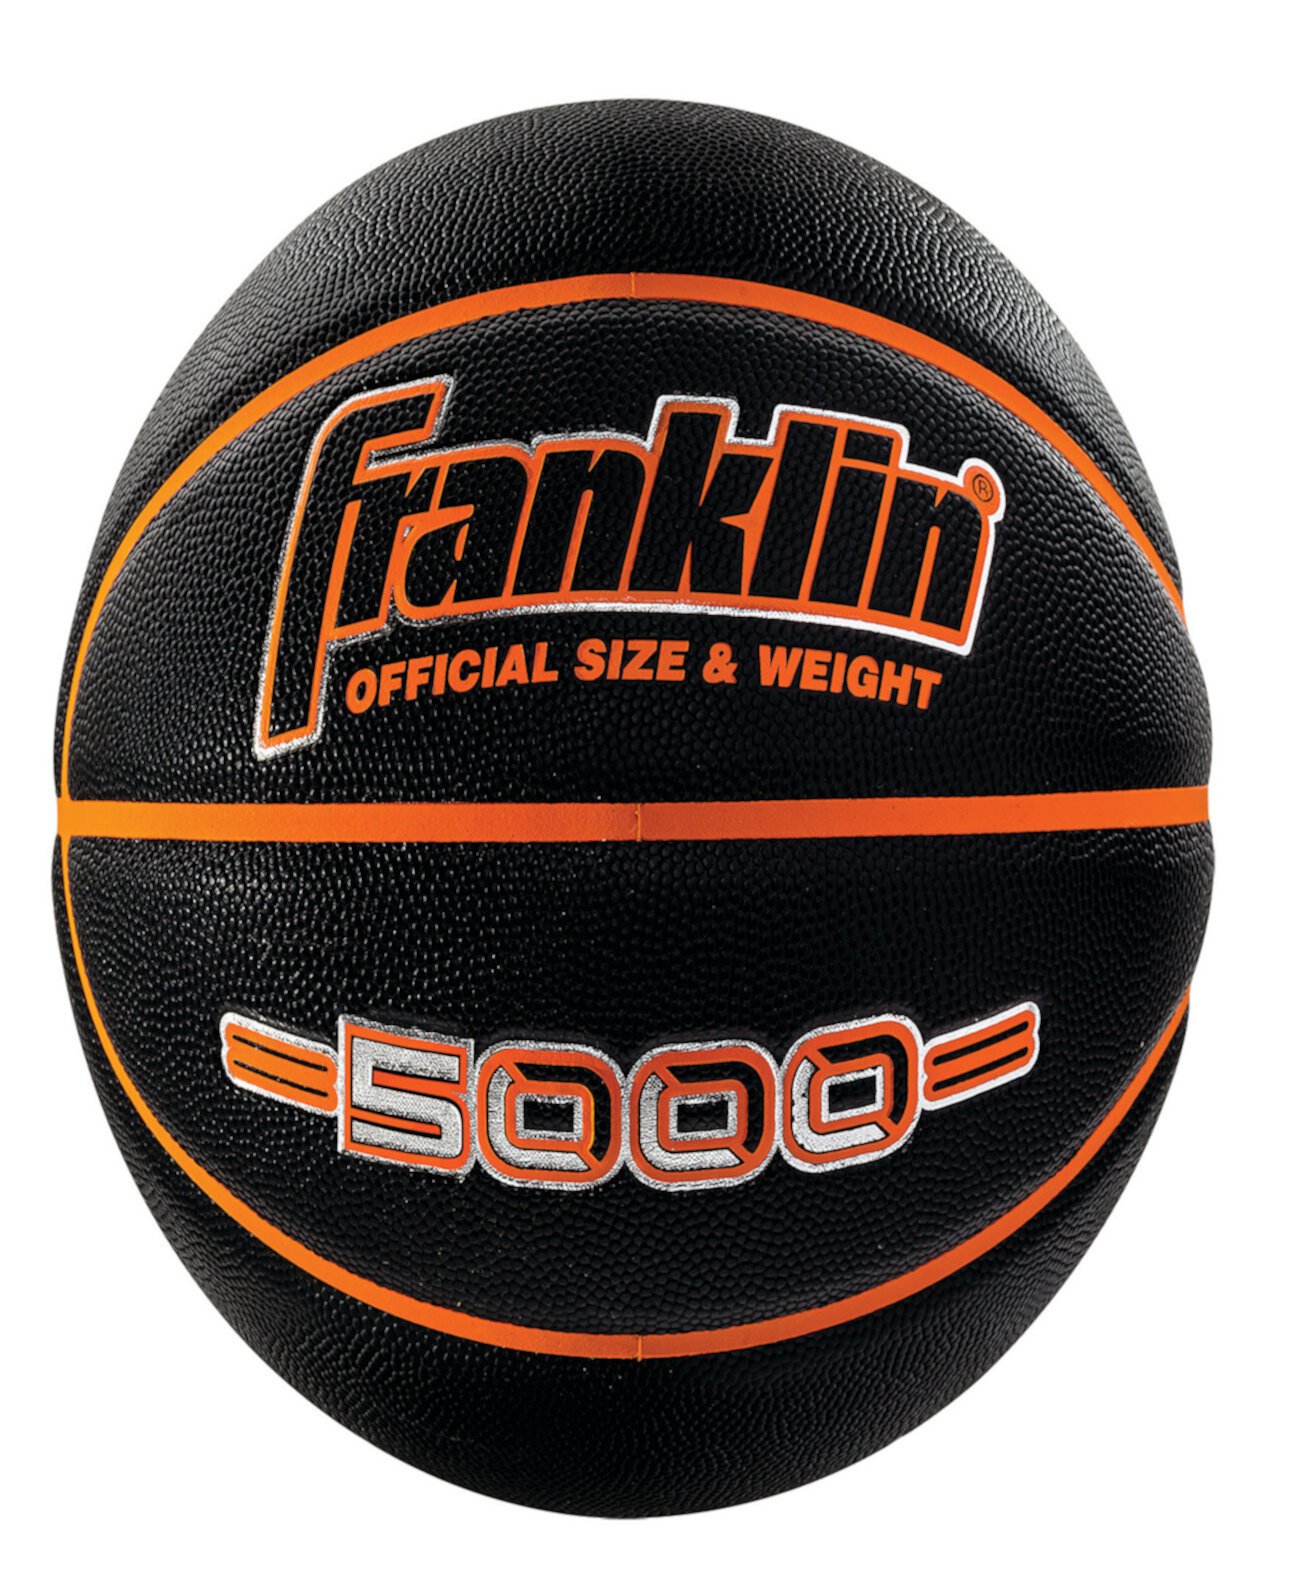 Баскетбольный мяч 5000 официального размера 29,5 дюймов Franklin Sports